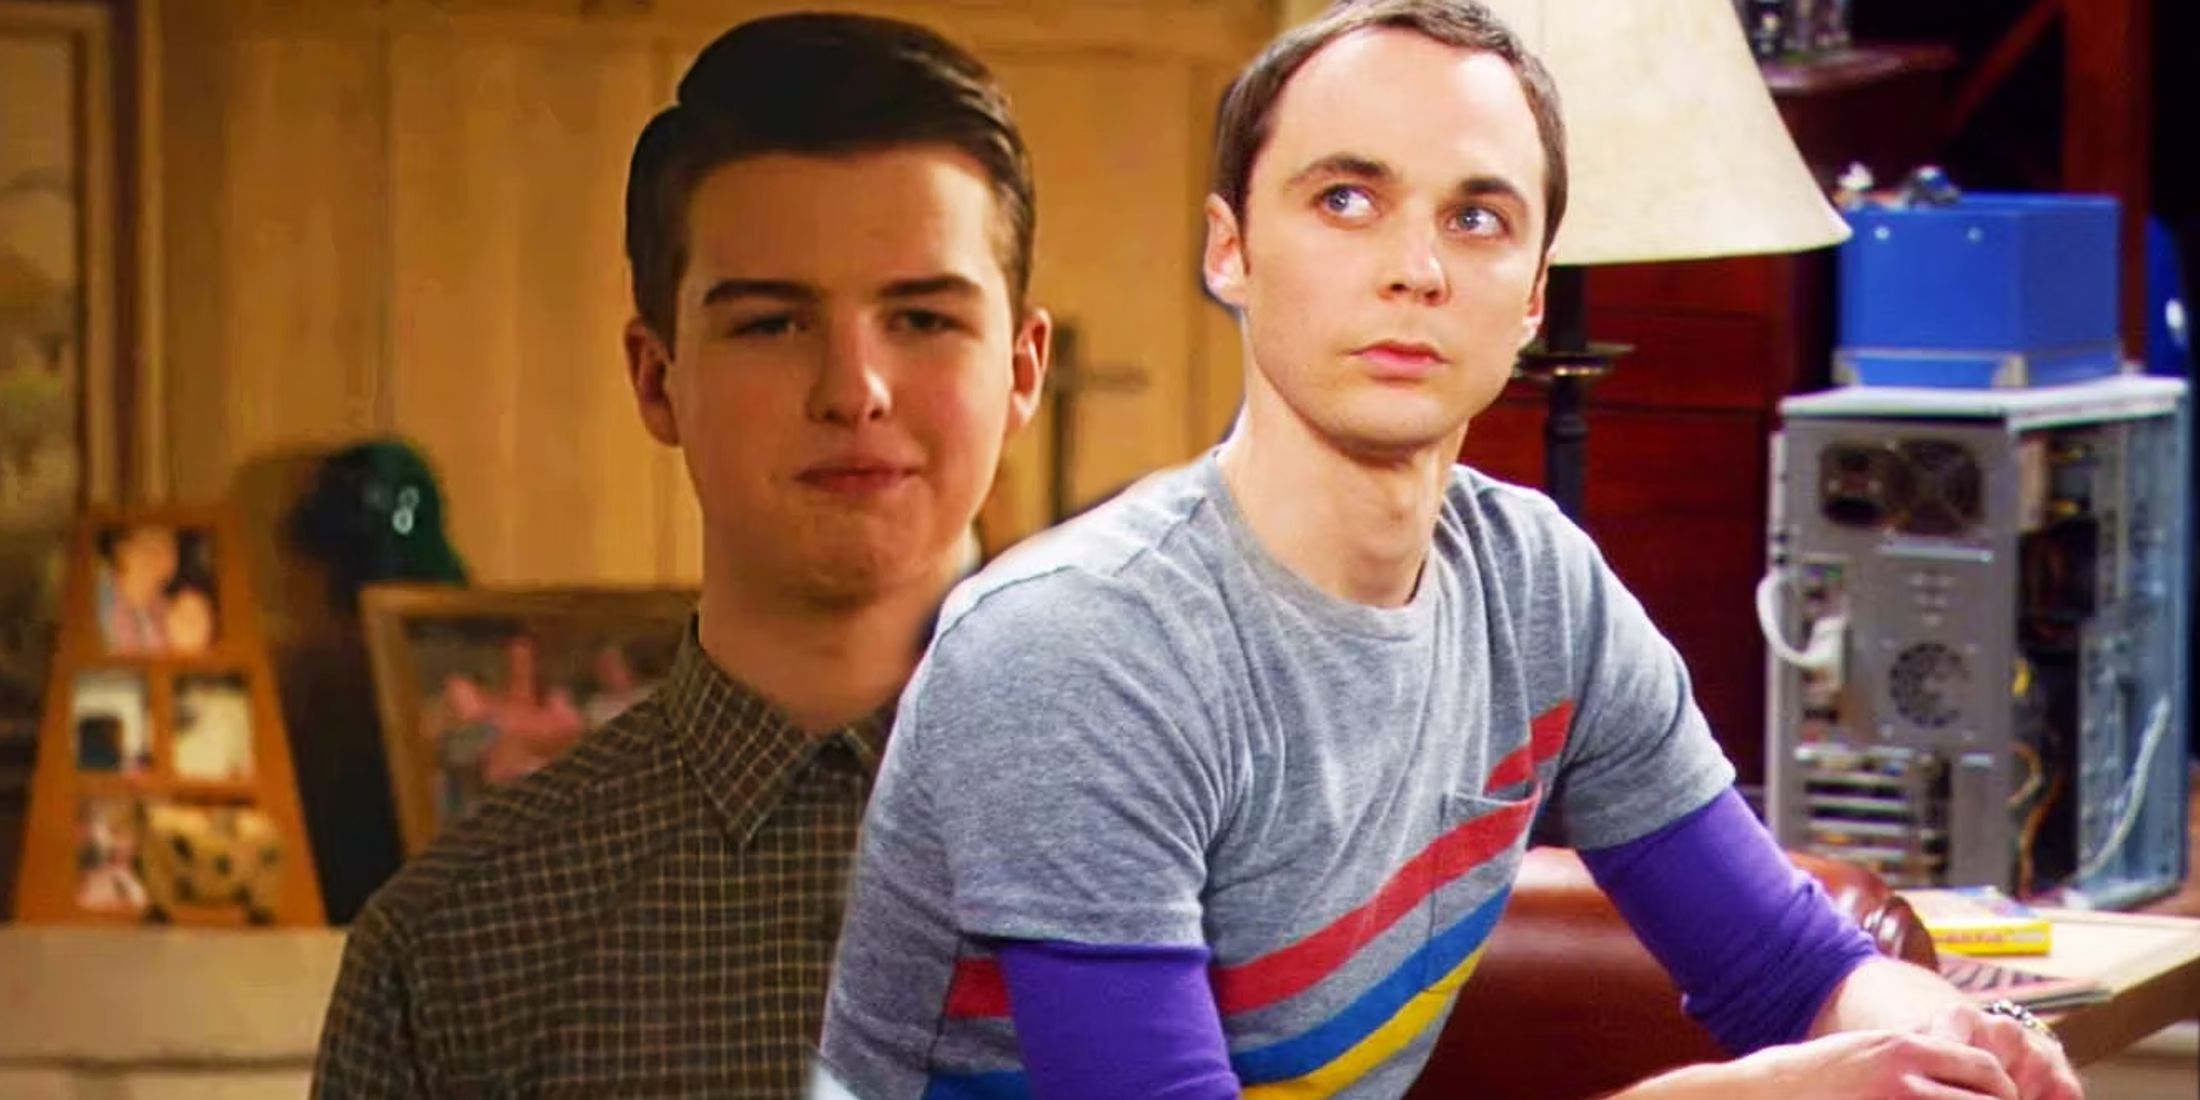 Sheldon com uma expressão estranha no rosto em Young Sheldon ao lado do Sheldon adulto olhando para cima em The Big Bang Theory